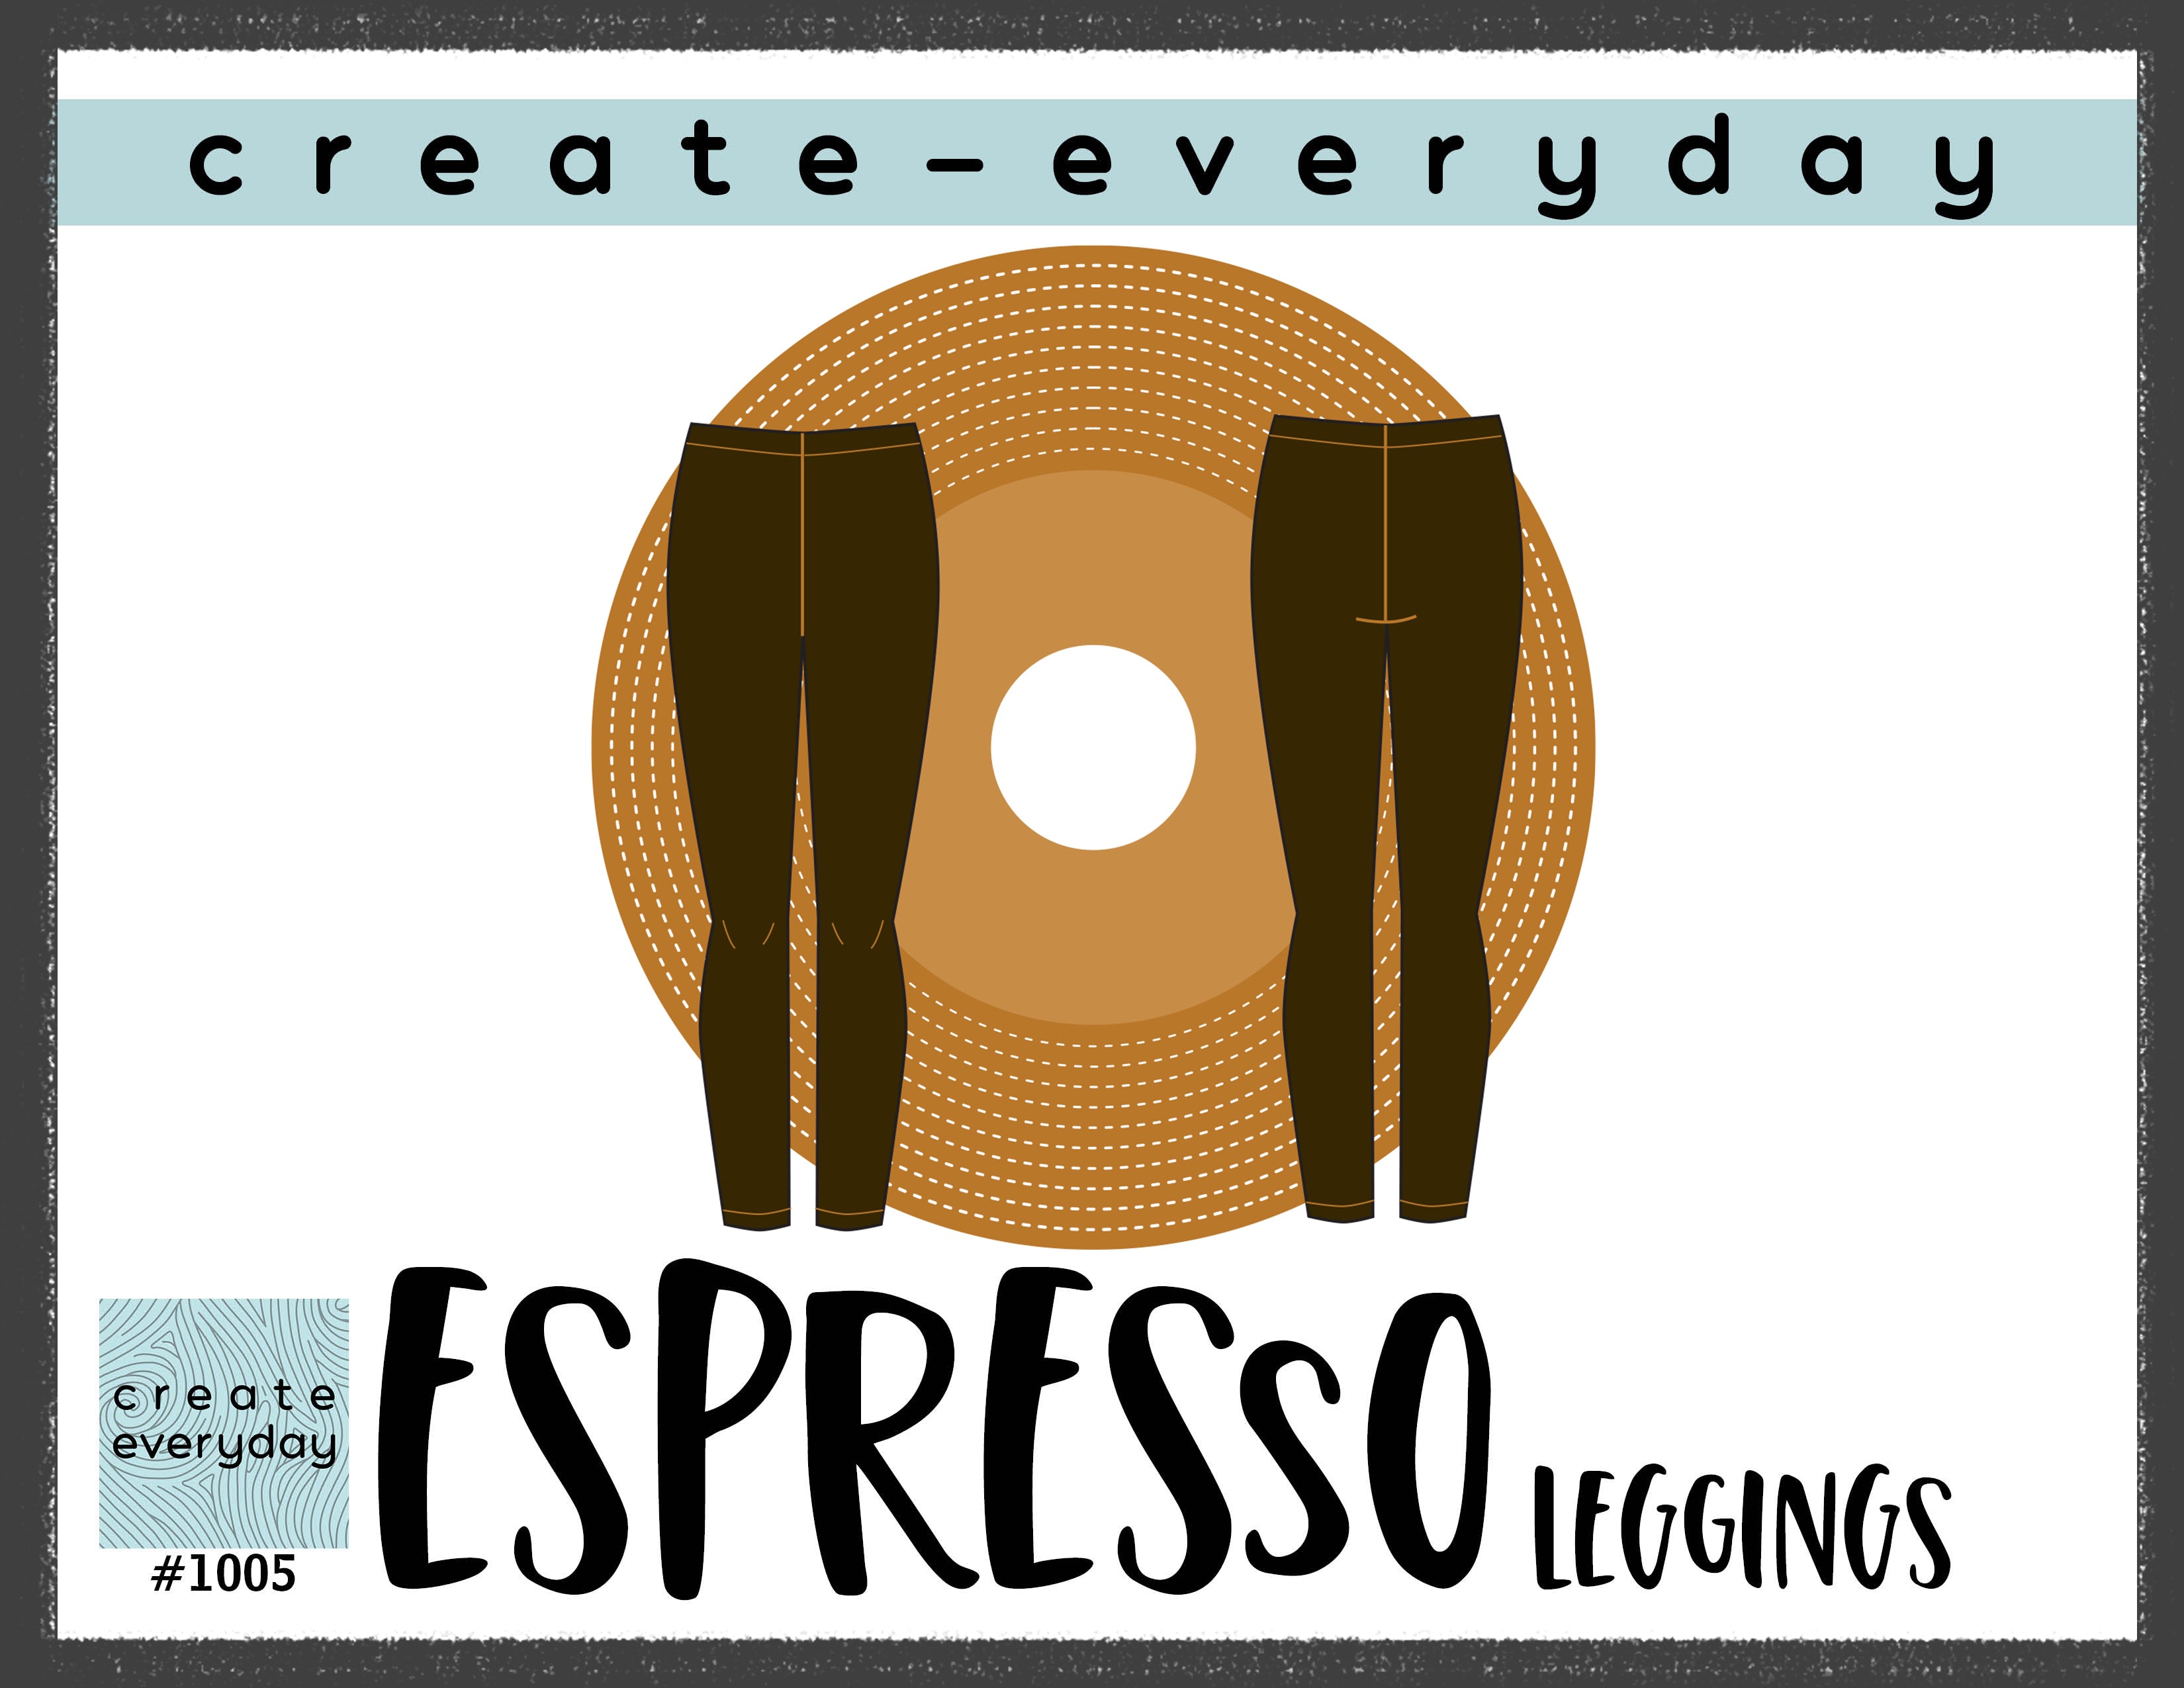 1005 ESPRESSO LEGGINGS (PRINTED) - Create-Everyday